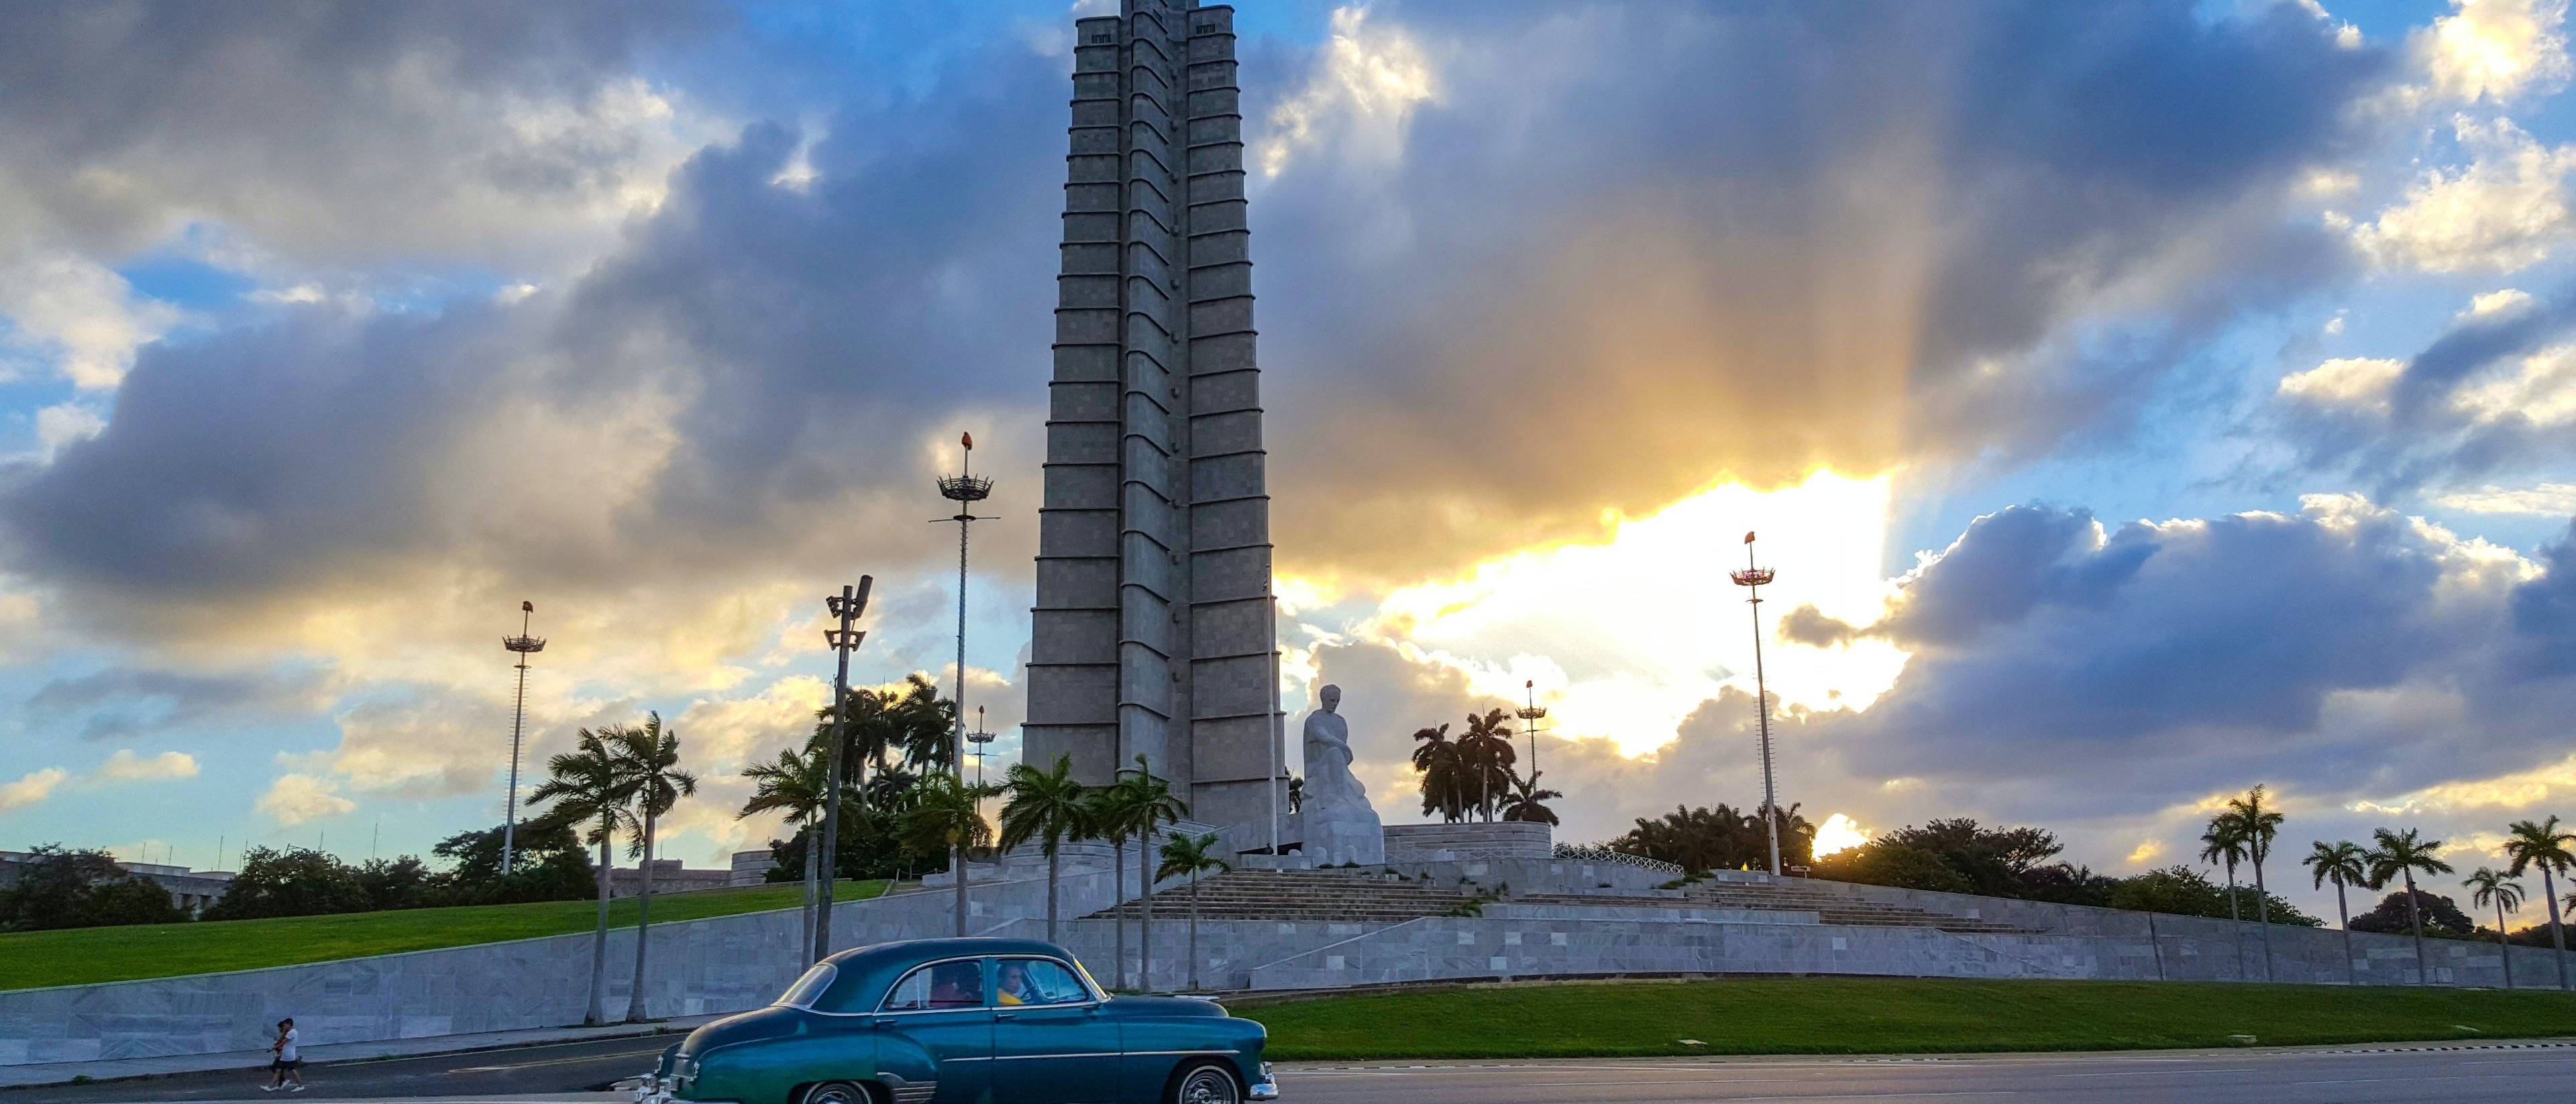 Bienvenue à Cuba !